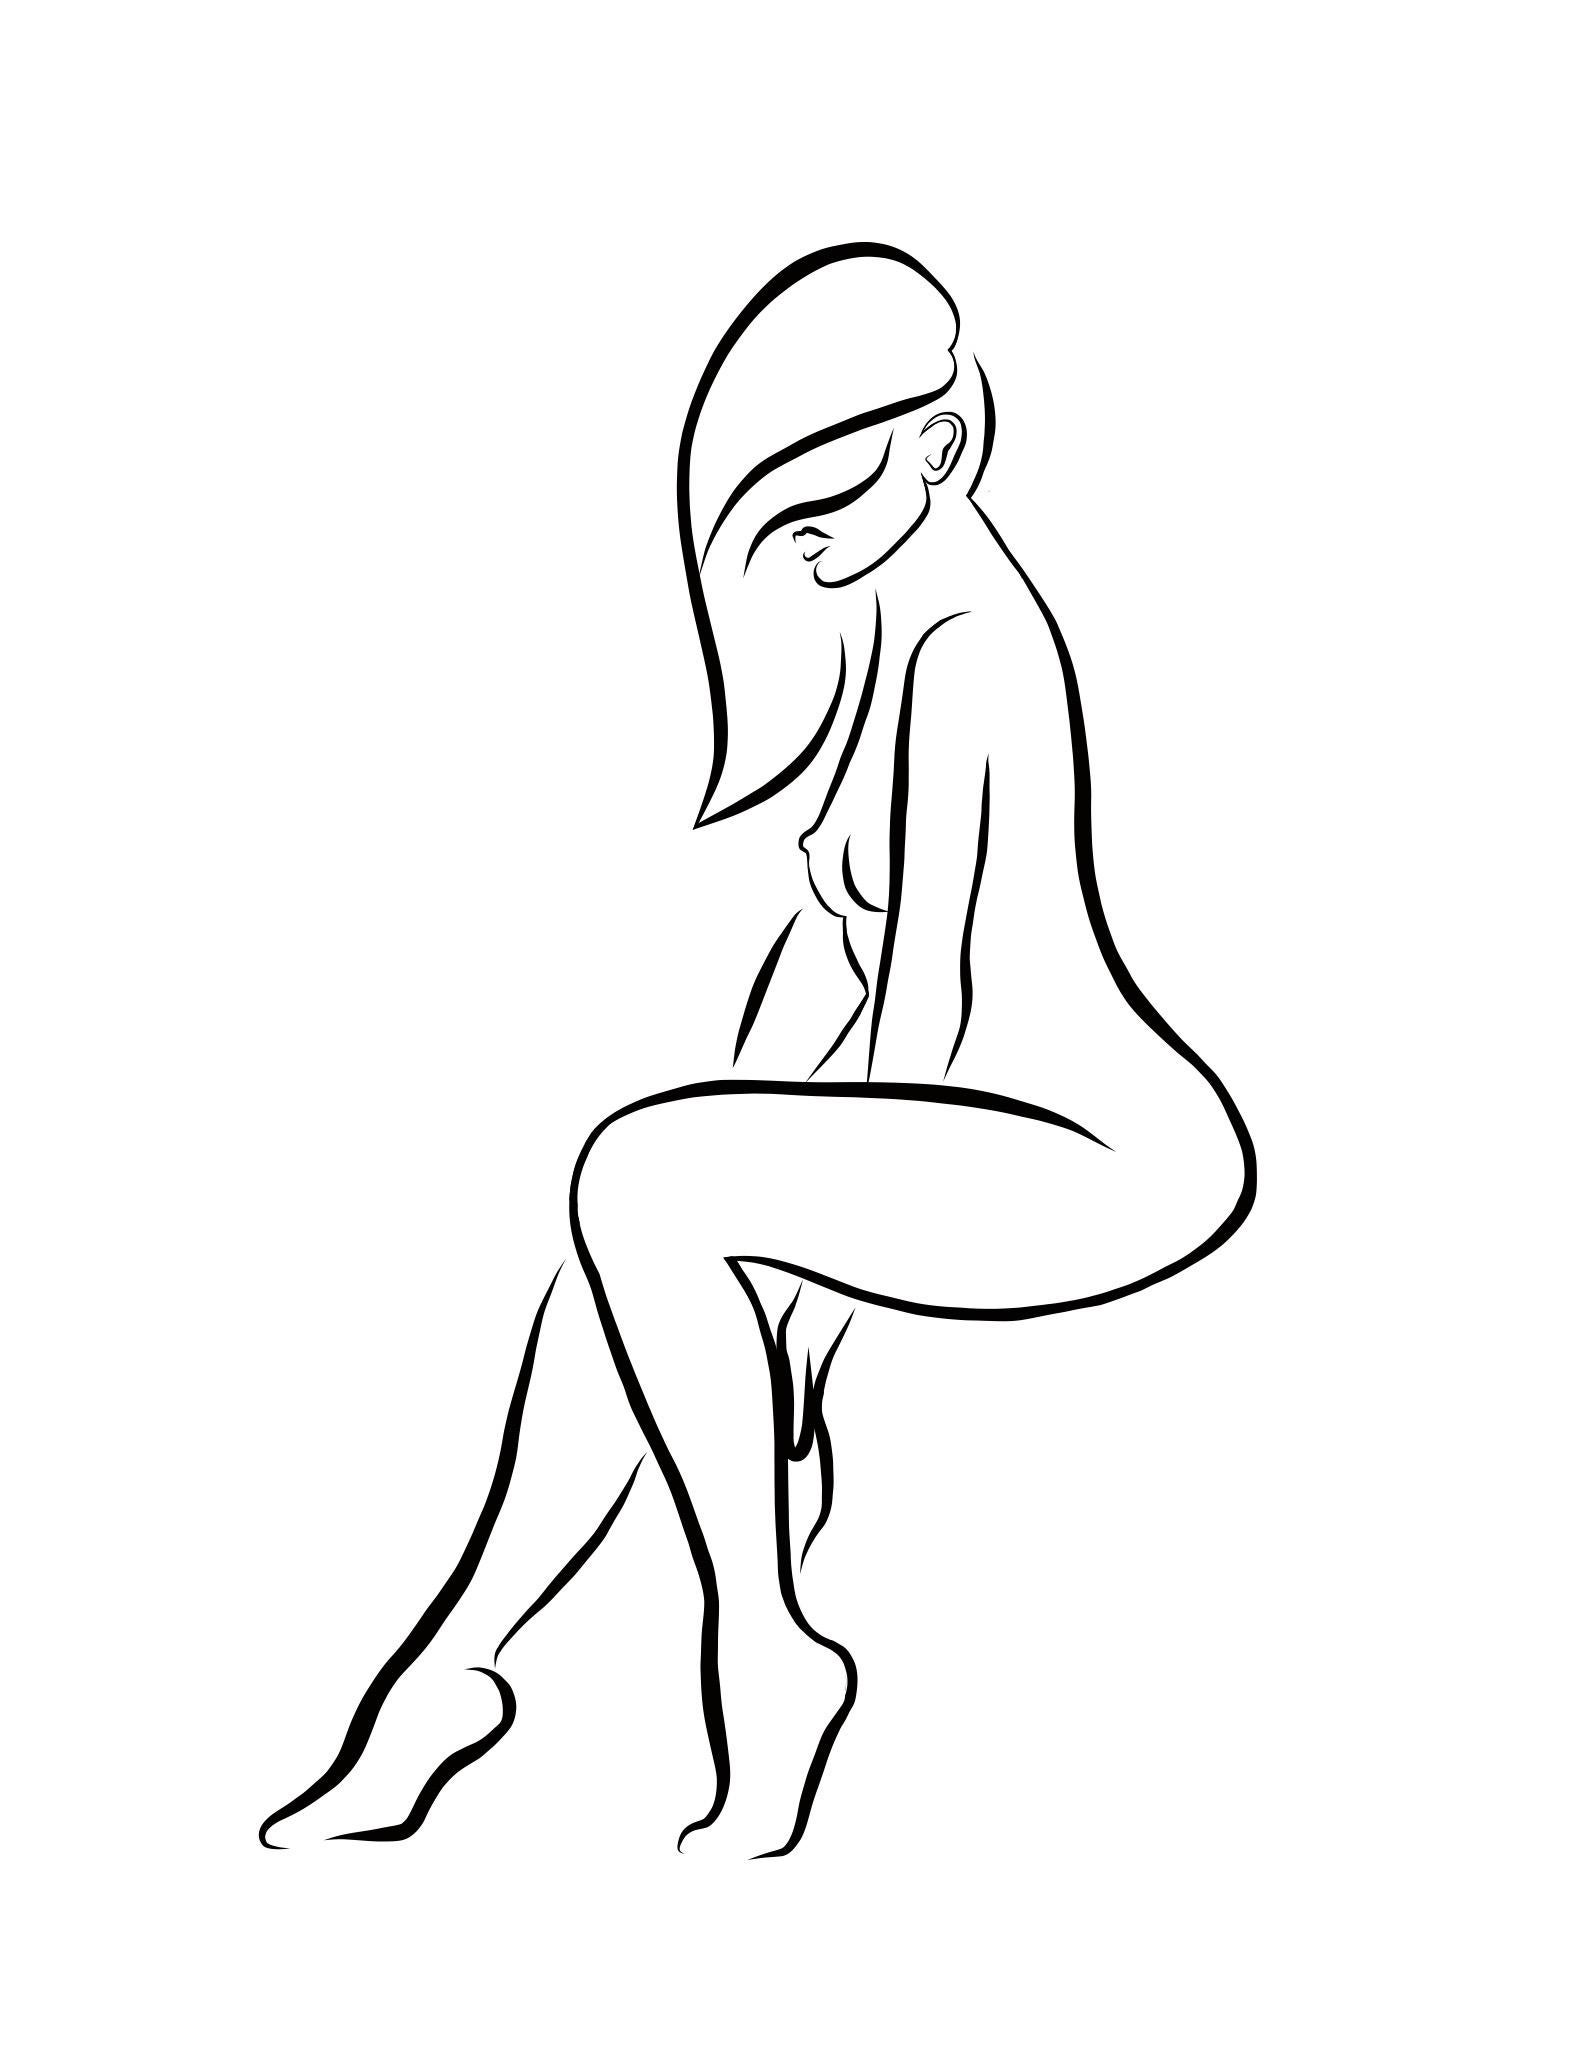 Michael Binkley Nude Print - Haiku #53, 1/50 - Digital Vector Drawing Female Nude Woman Figure Tossed Hair